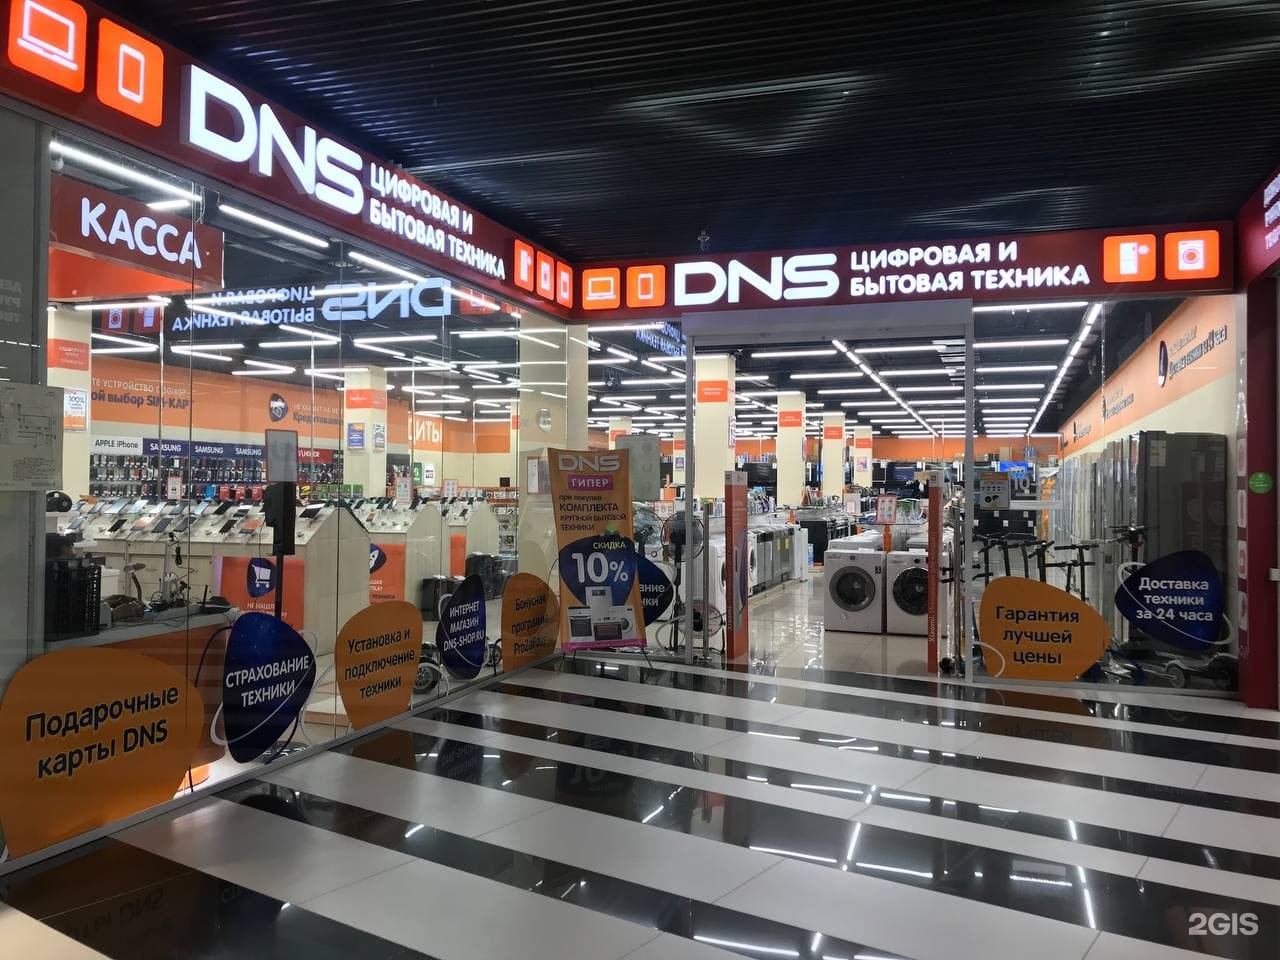 Купить центр в днс. ДНС компьютер центр. Цифровой супермаркет DNS Новосибирск. DNS Computer Center.